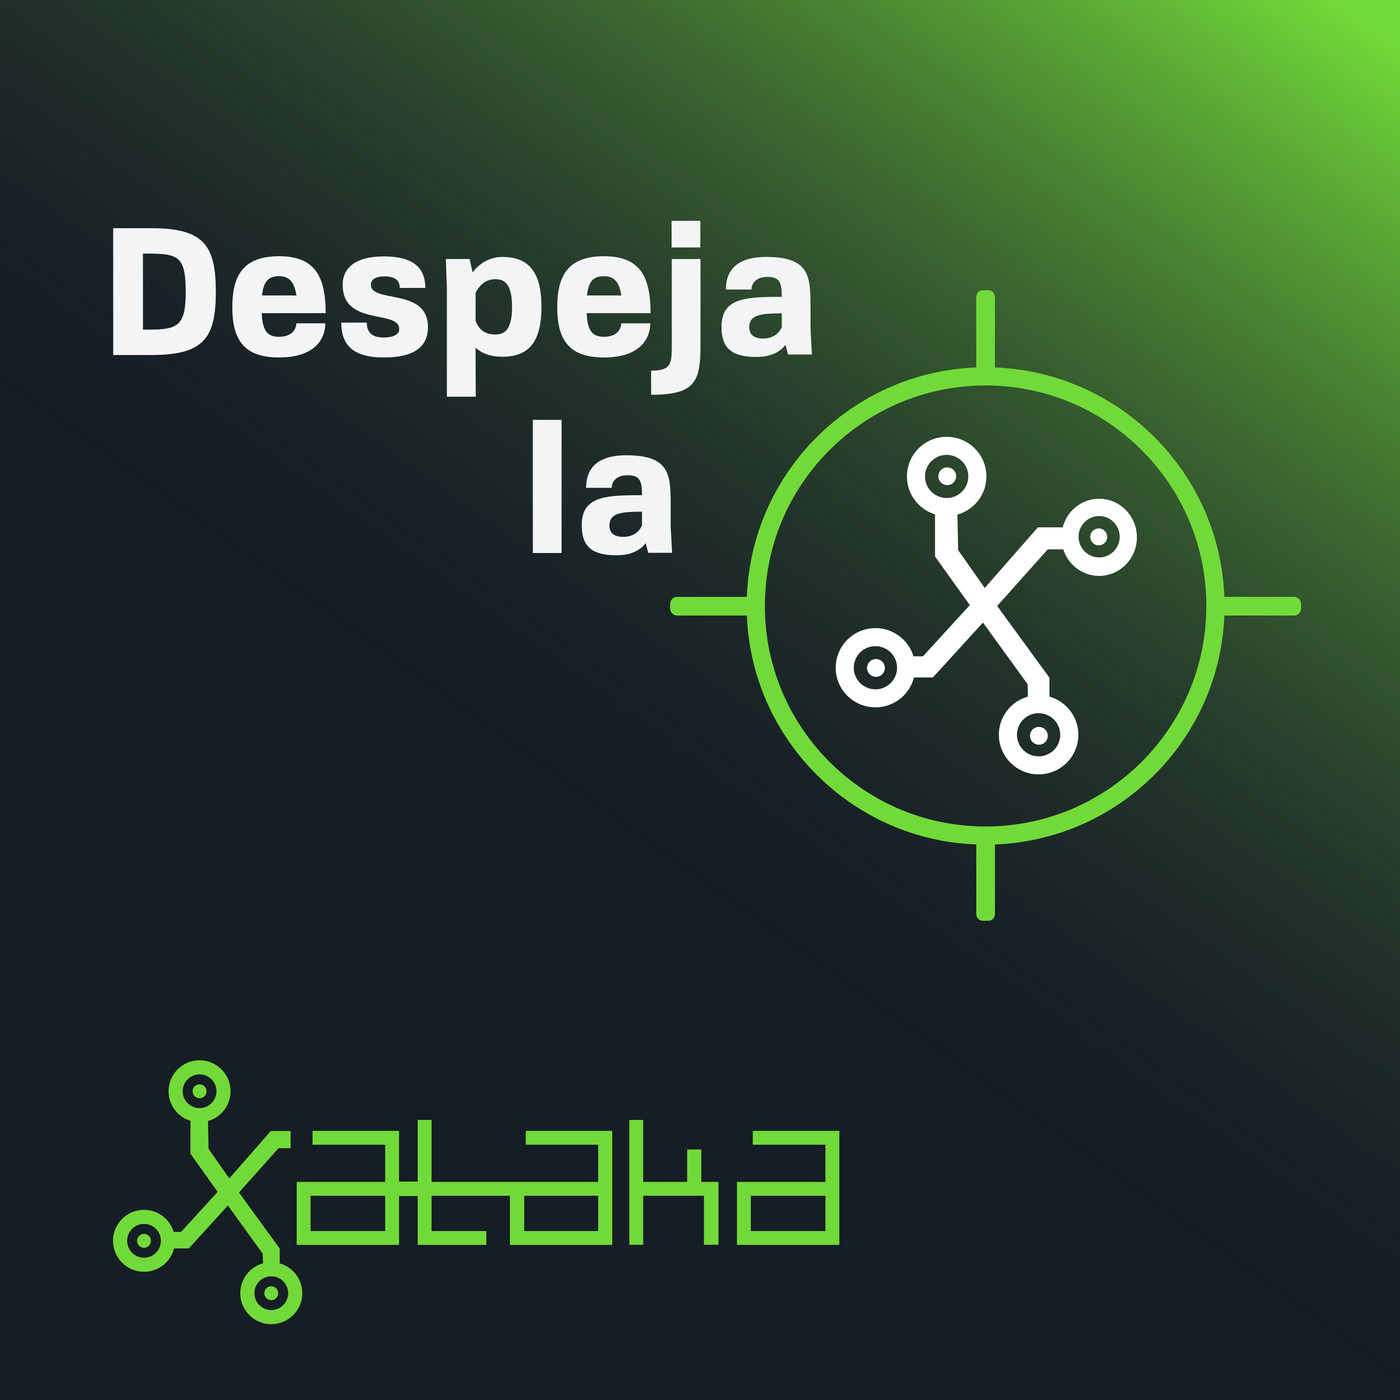 Despeja la X (by Xataka)